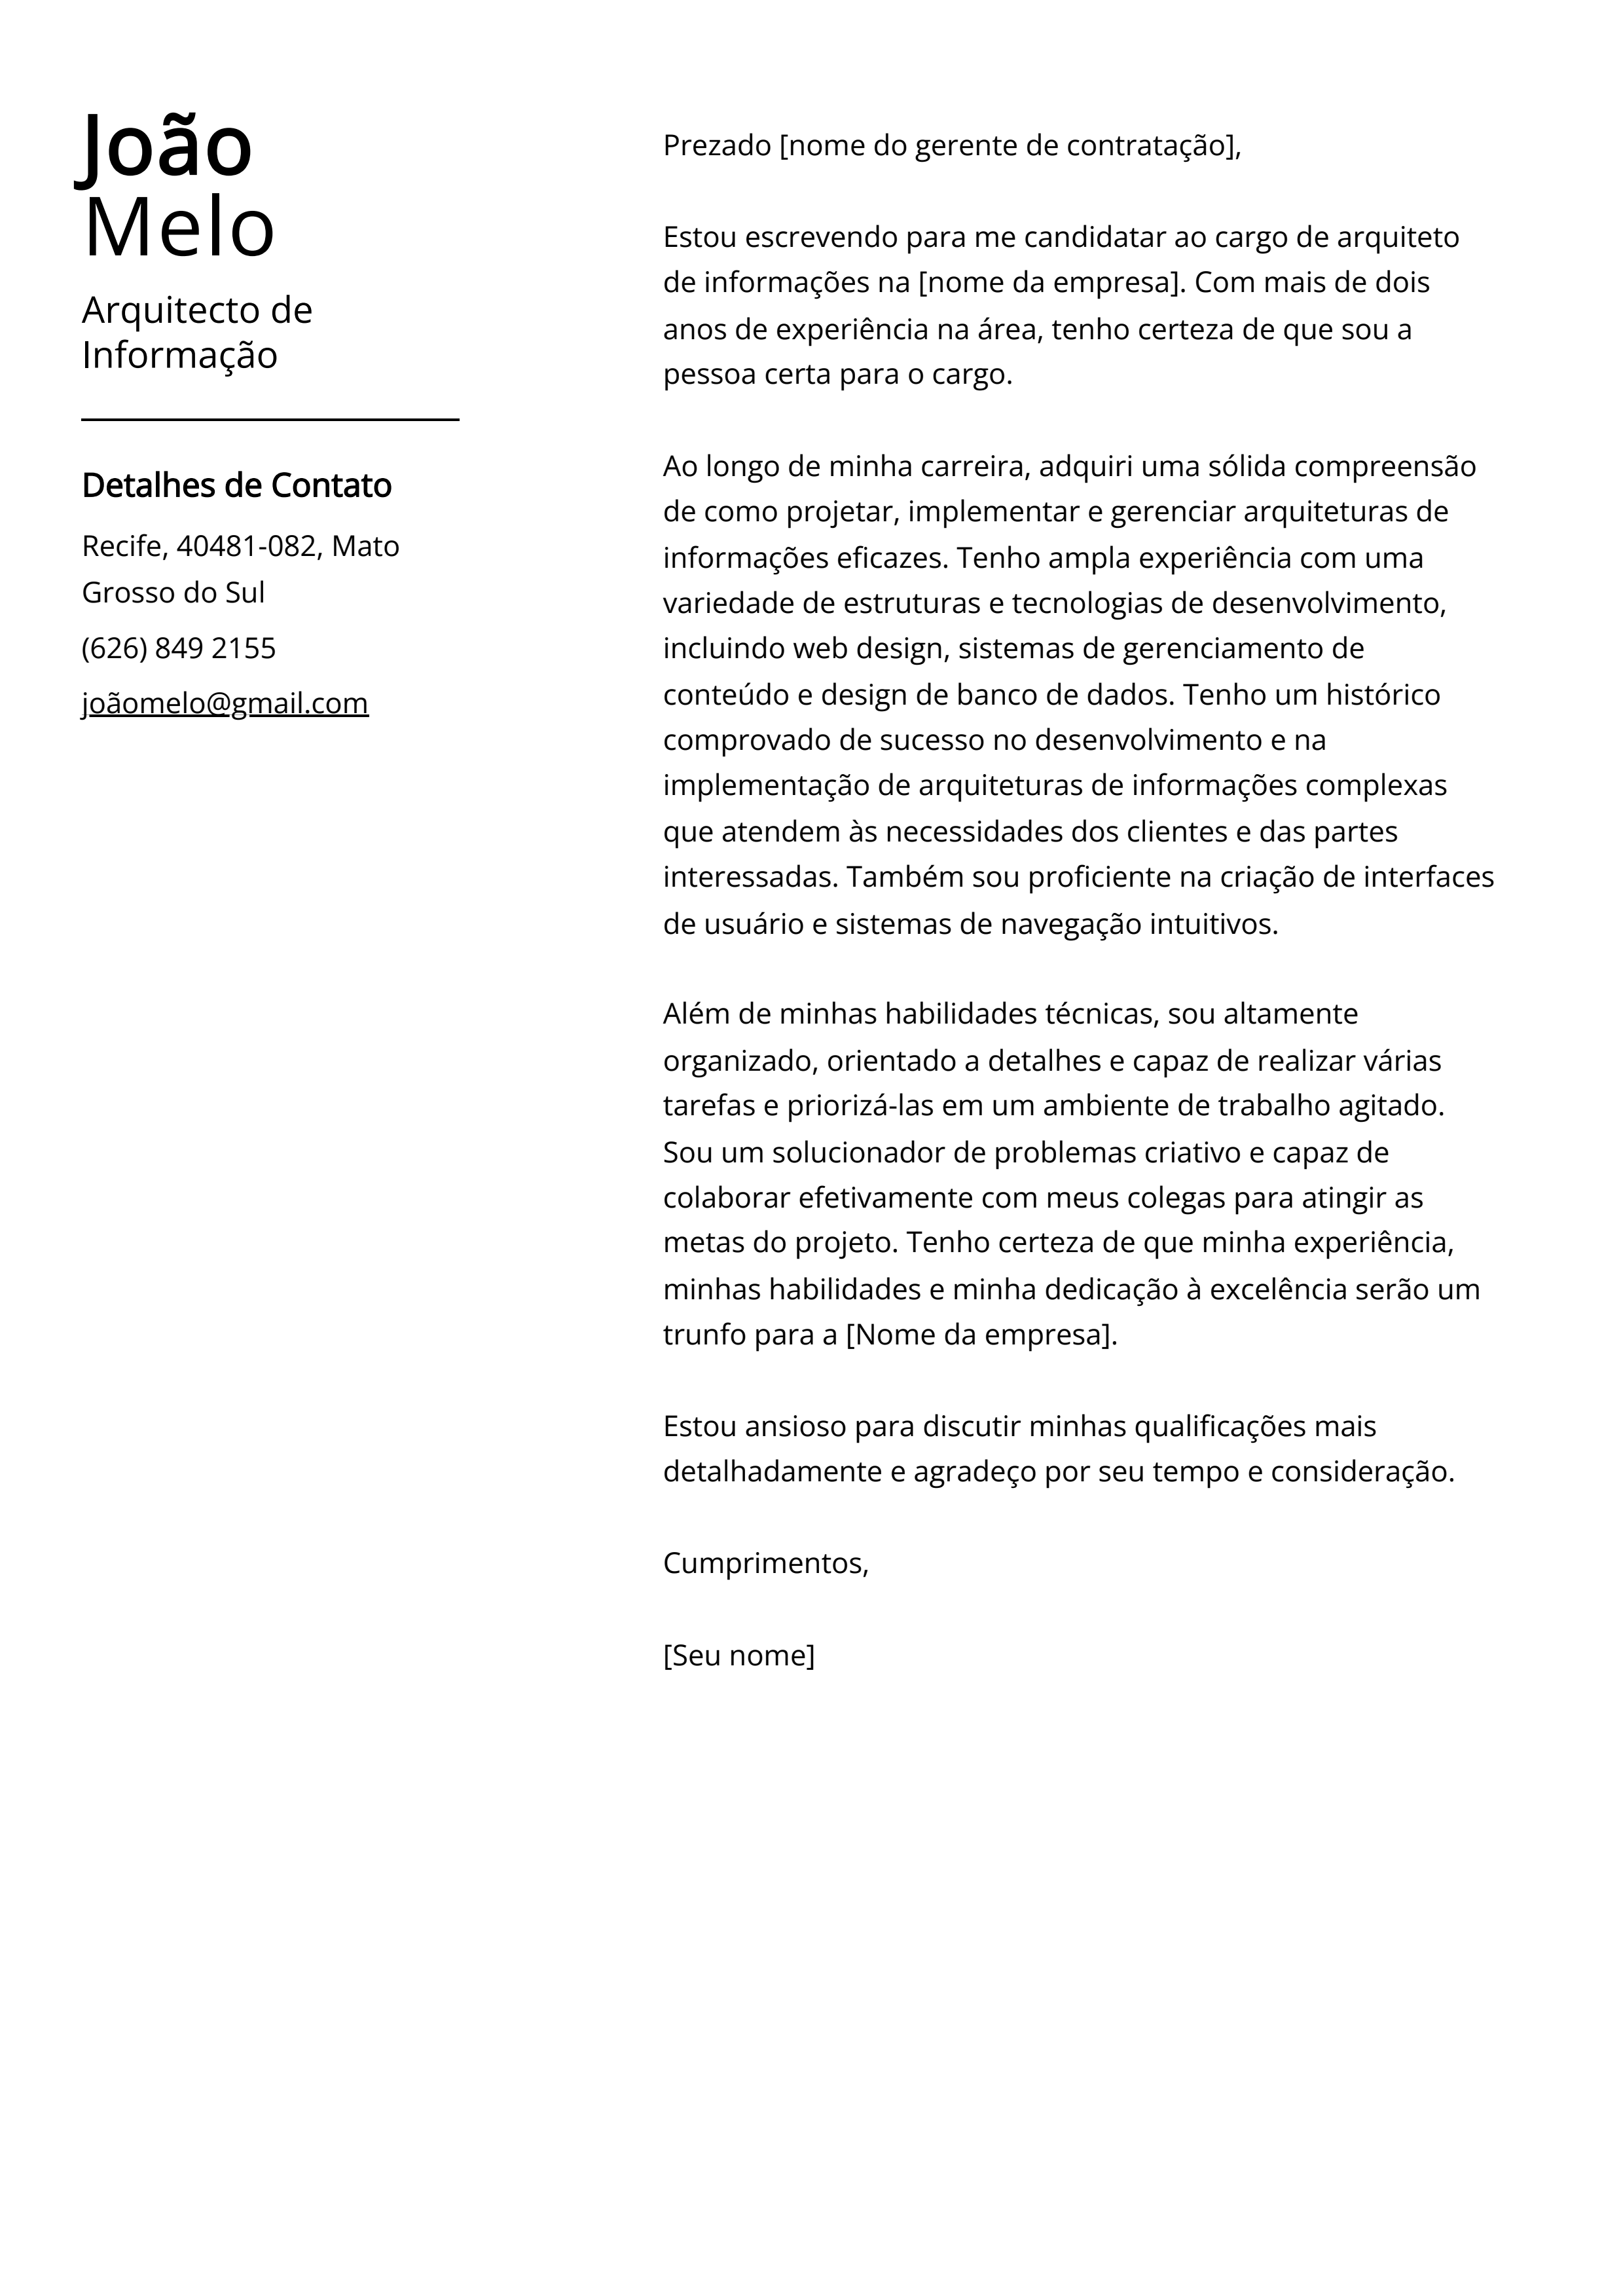 Exemplo de Carta de Apresentação de Arquiteto de Informação